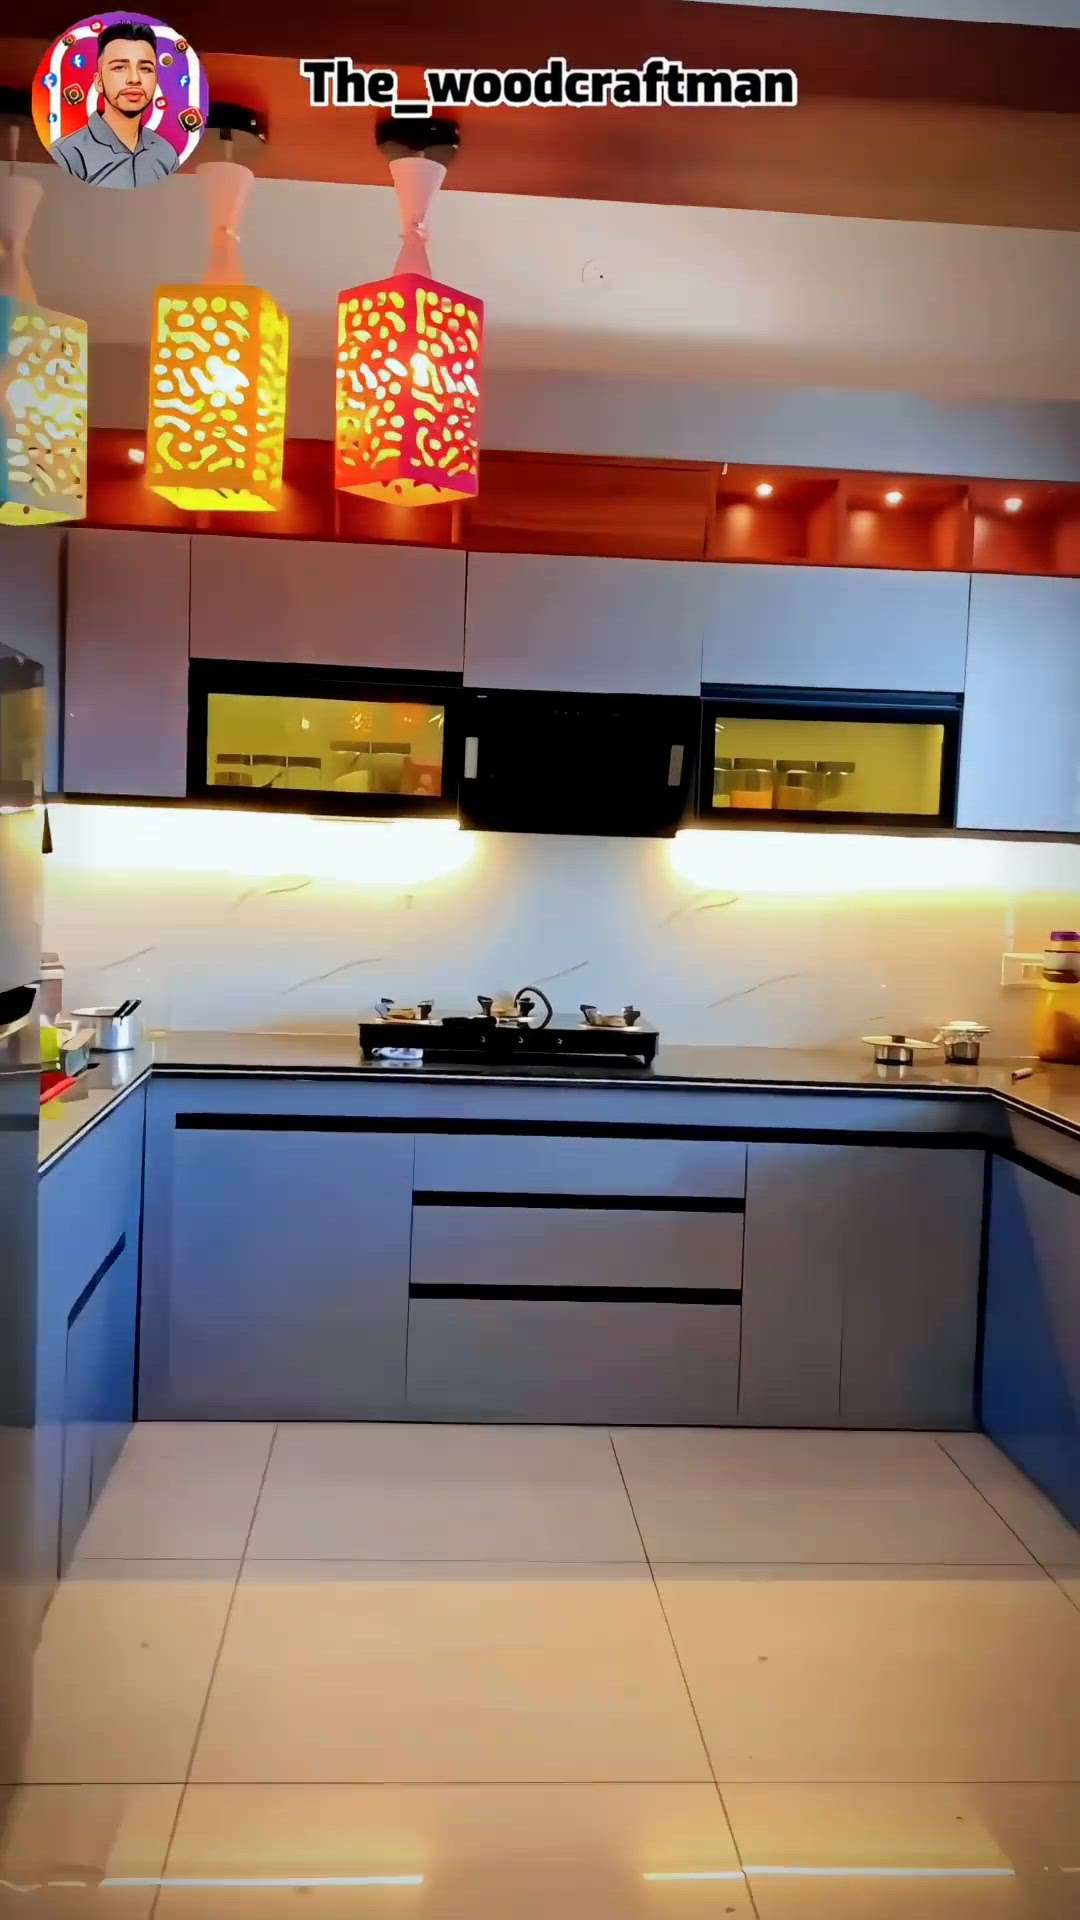 Want Modular kitchen?

Contact us:- 99299-15722
Interior furnishings and designing!
#ModularKitchen #modularwardrobe #ModernBedMaking #modular #LivingroomDesigns #LivingRoomCarpets #LivingRoomSofa #4DoorWardrobe #5DoorWardrobe #WalkInWardrobe #LivingRoomTVCabinet #LivingRoomTVCabinet #WalkInWardrobe